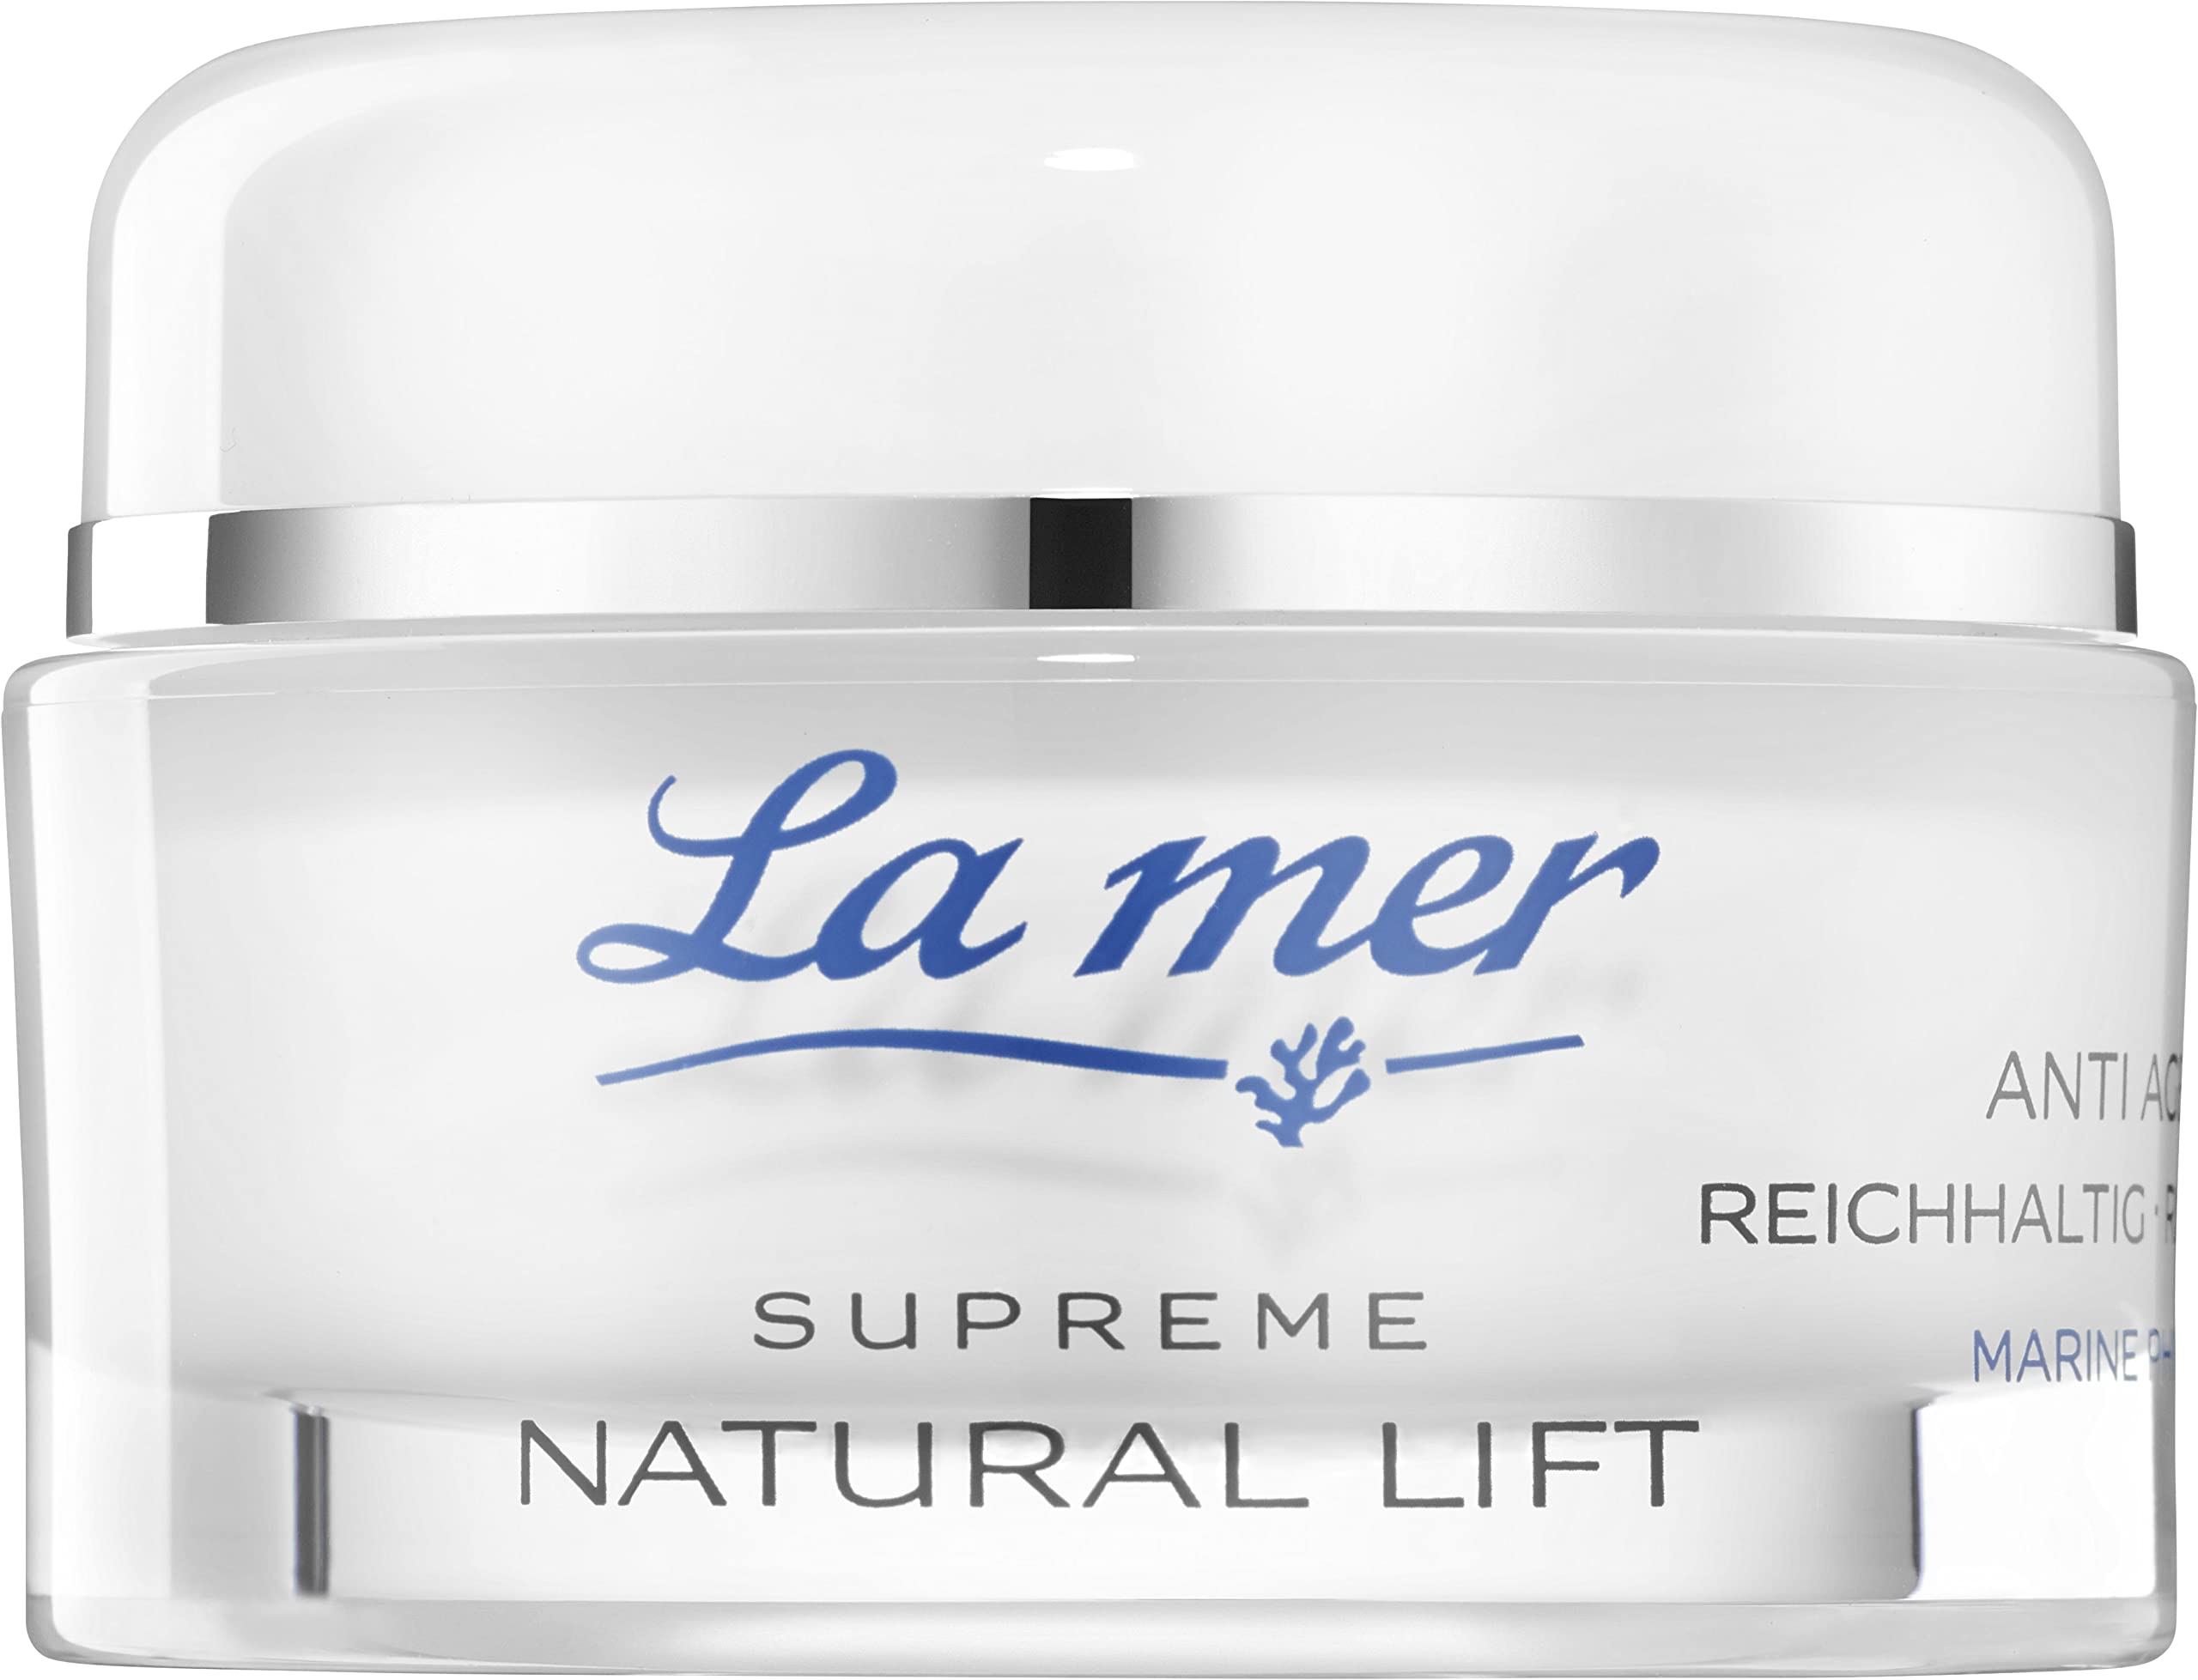 La mer Supreme Natural Lift Anti Age Cream Reichhaltig - Extra reichhaltige Gesichtspflege - Straffende und glättende Wirkung - Reduziert die Faltentiefe - Für alle Hauttypen geeignet - 50ml